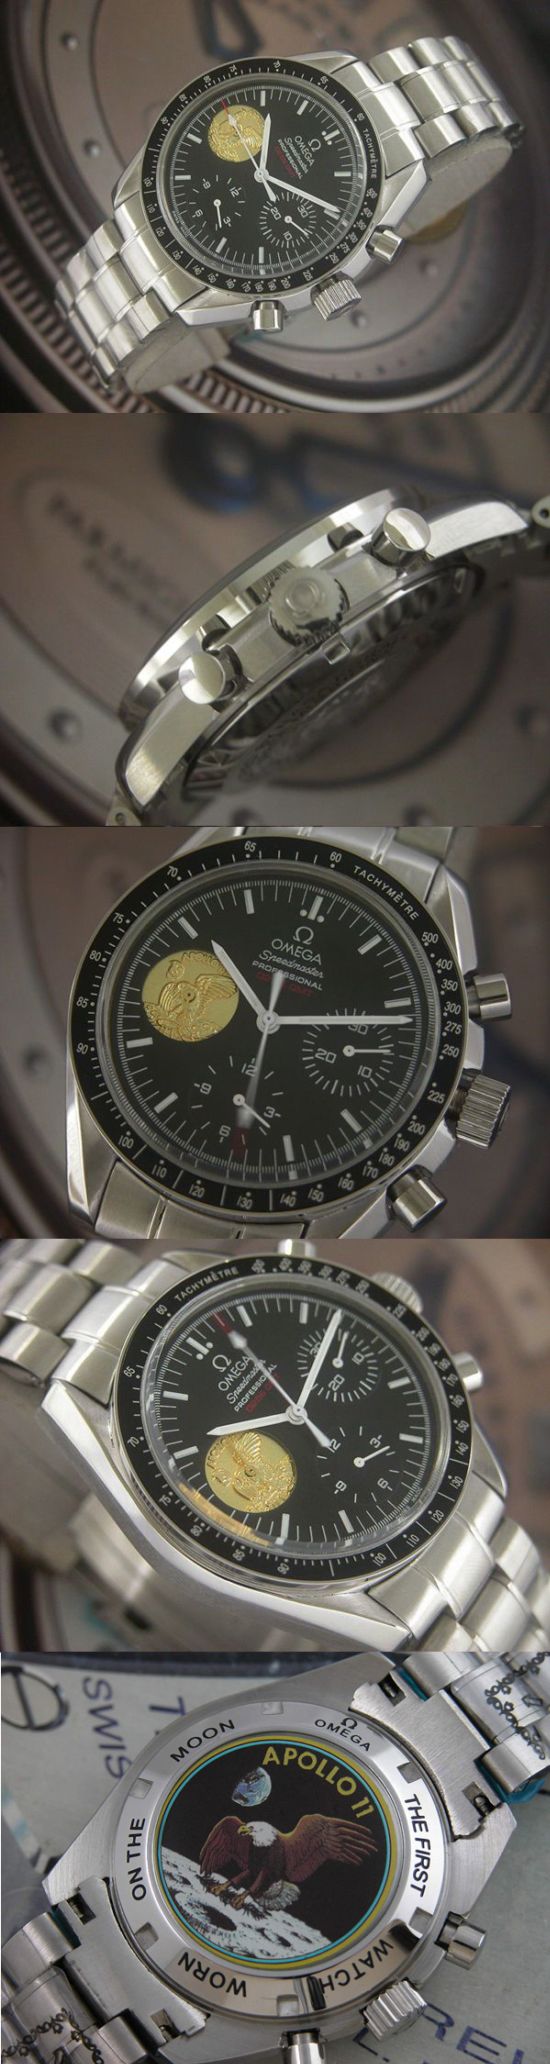 おしゃれなブランド時計がオメガ-スピードマスター-OMEGA-311.30.42.30.01.001-男性用を提供します.